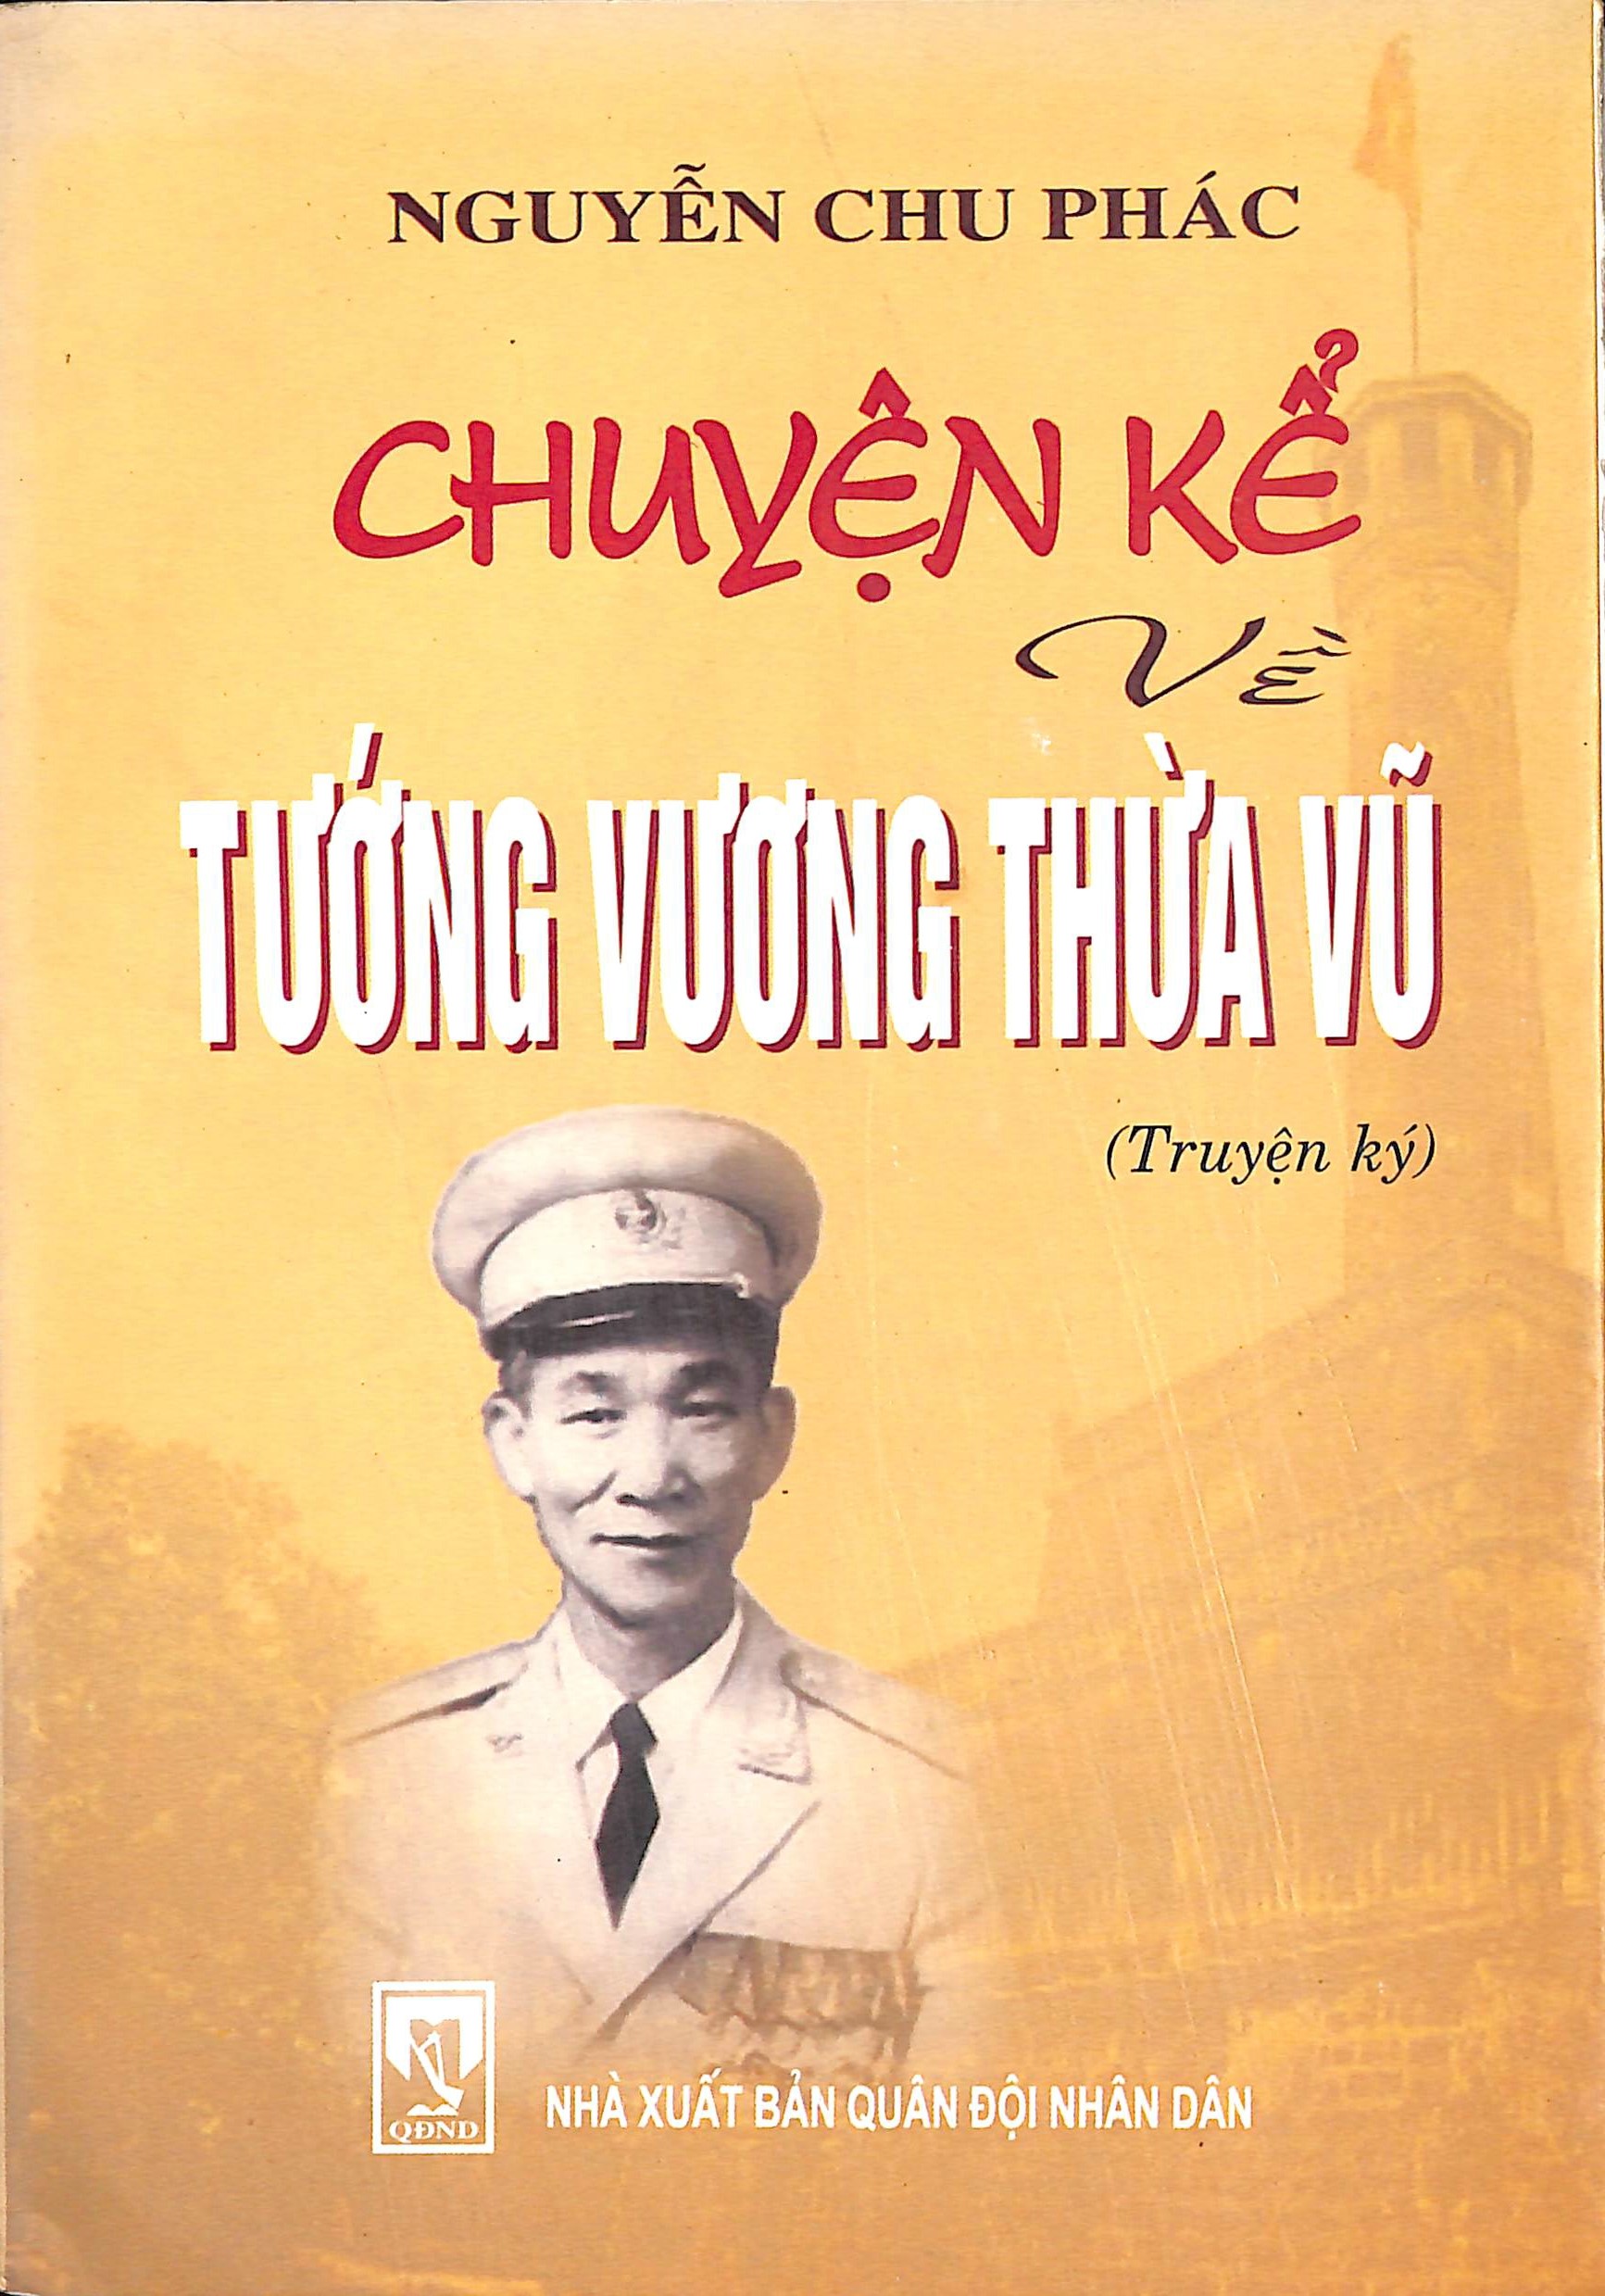 Chuyện kể về tướng Vương Thừa Vũ